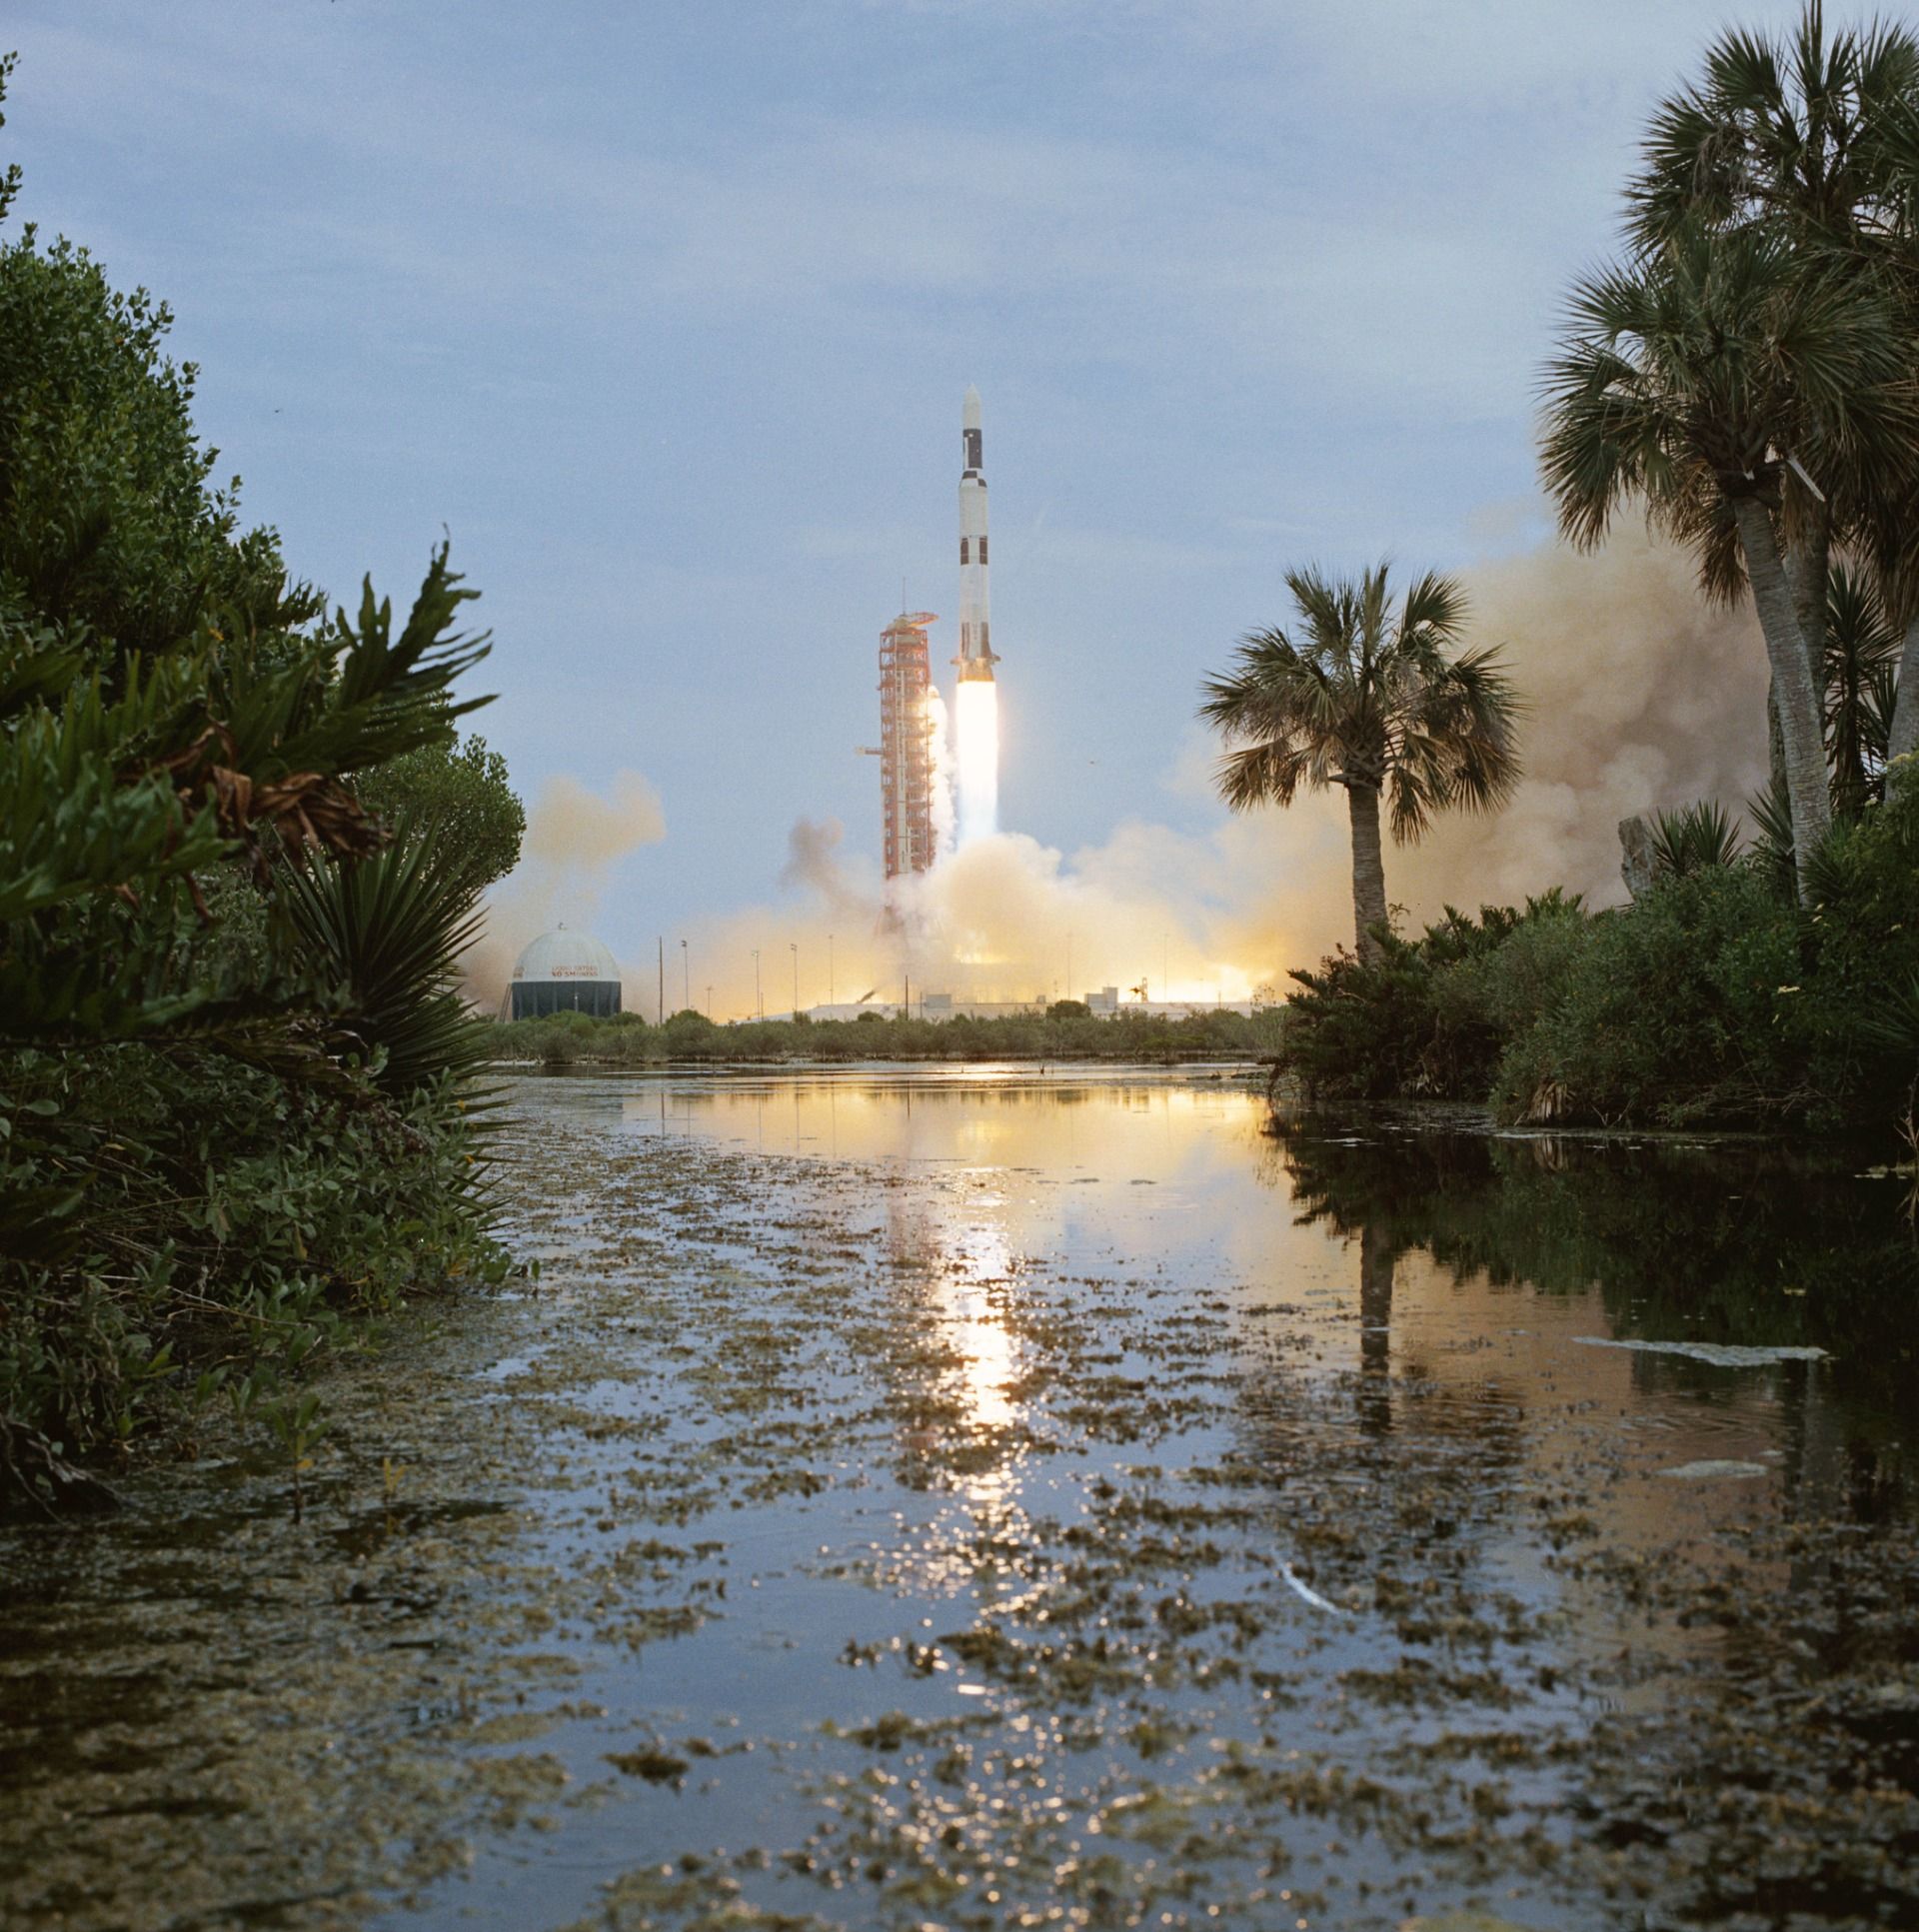 Skylab launch